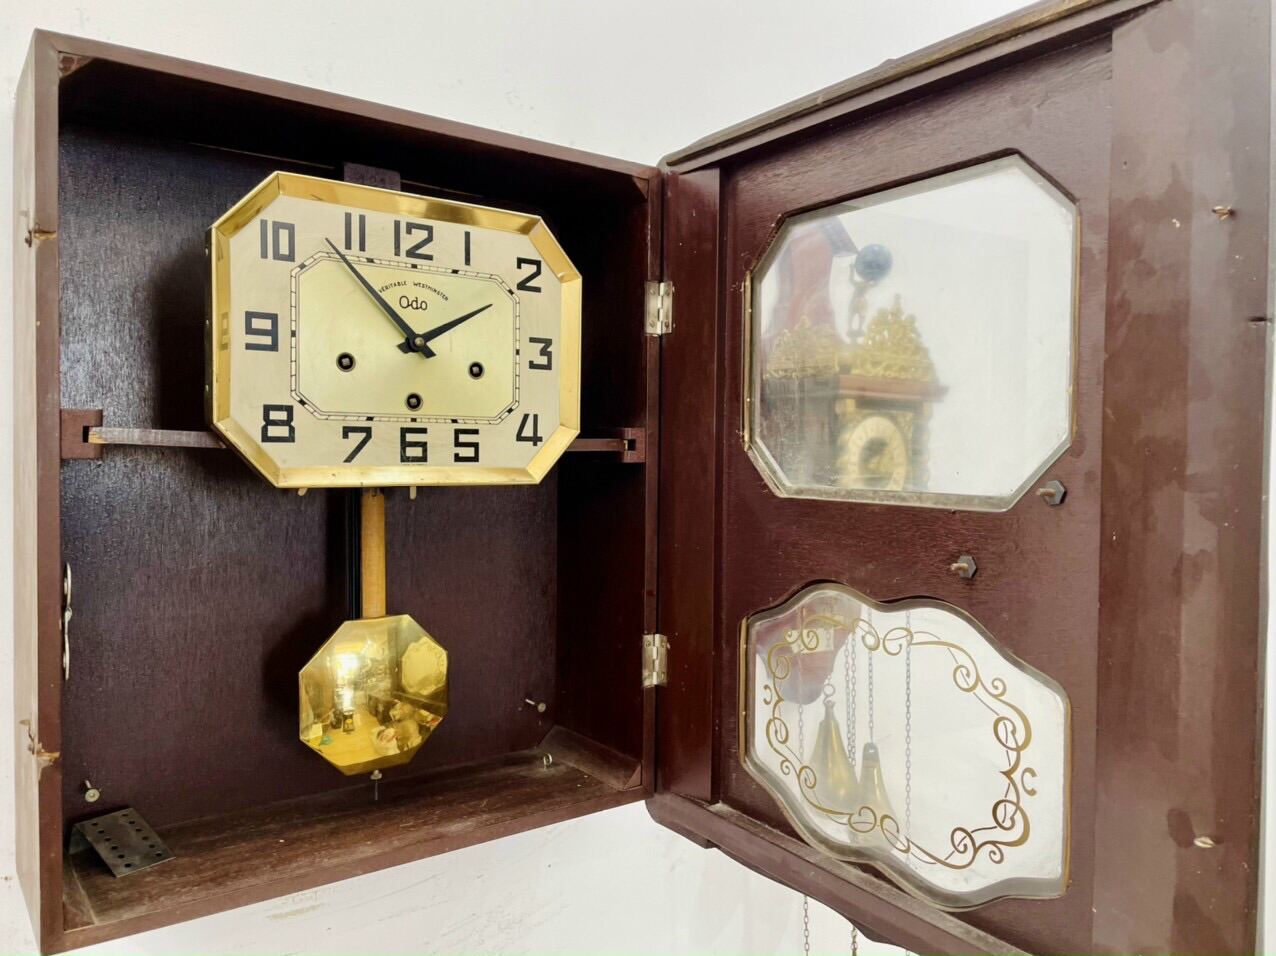 K414:Đồng hồ Odo chơi gông đơn có điểm chuông nhắc lại độc đáo - Đồng hồ  quả lắc